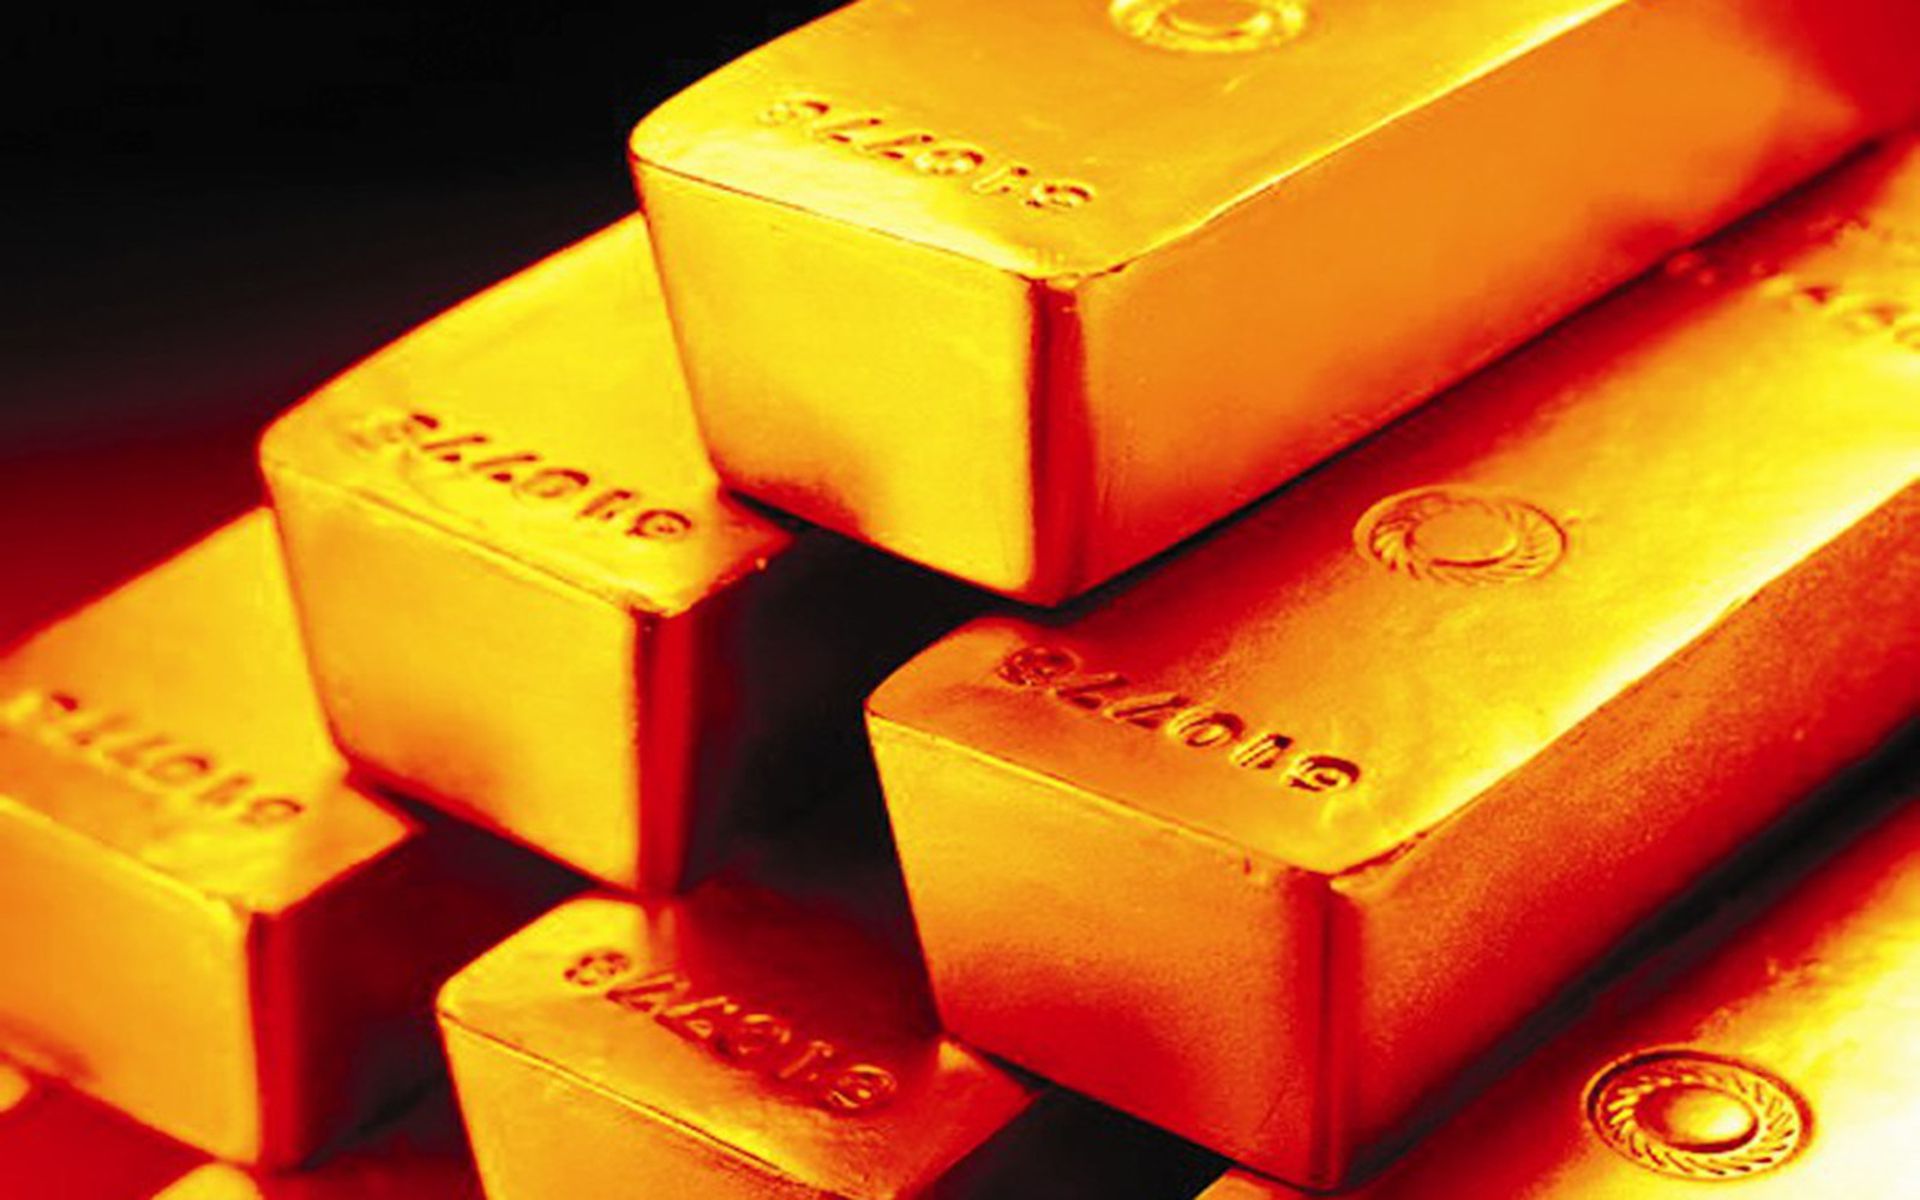 黃金有望成為2月美股表現最佳板塊